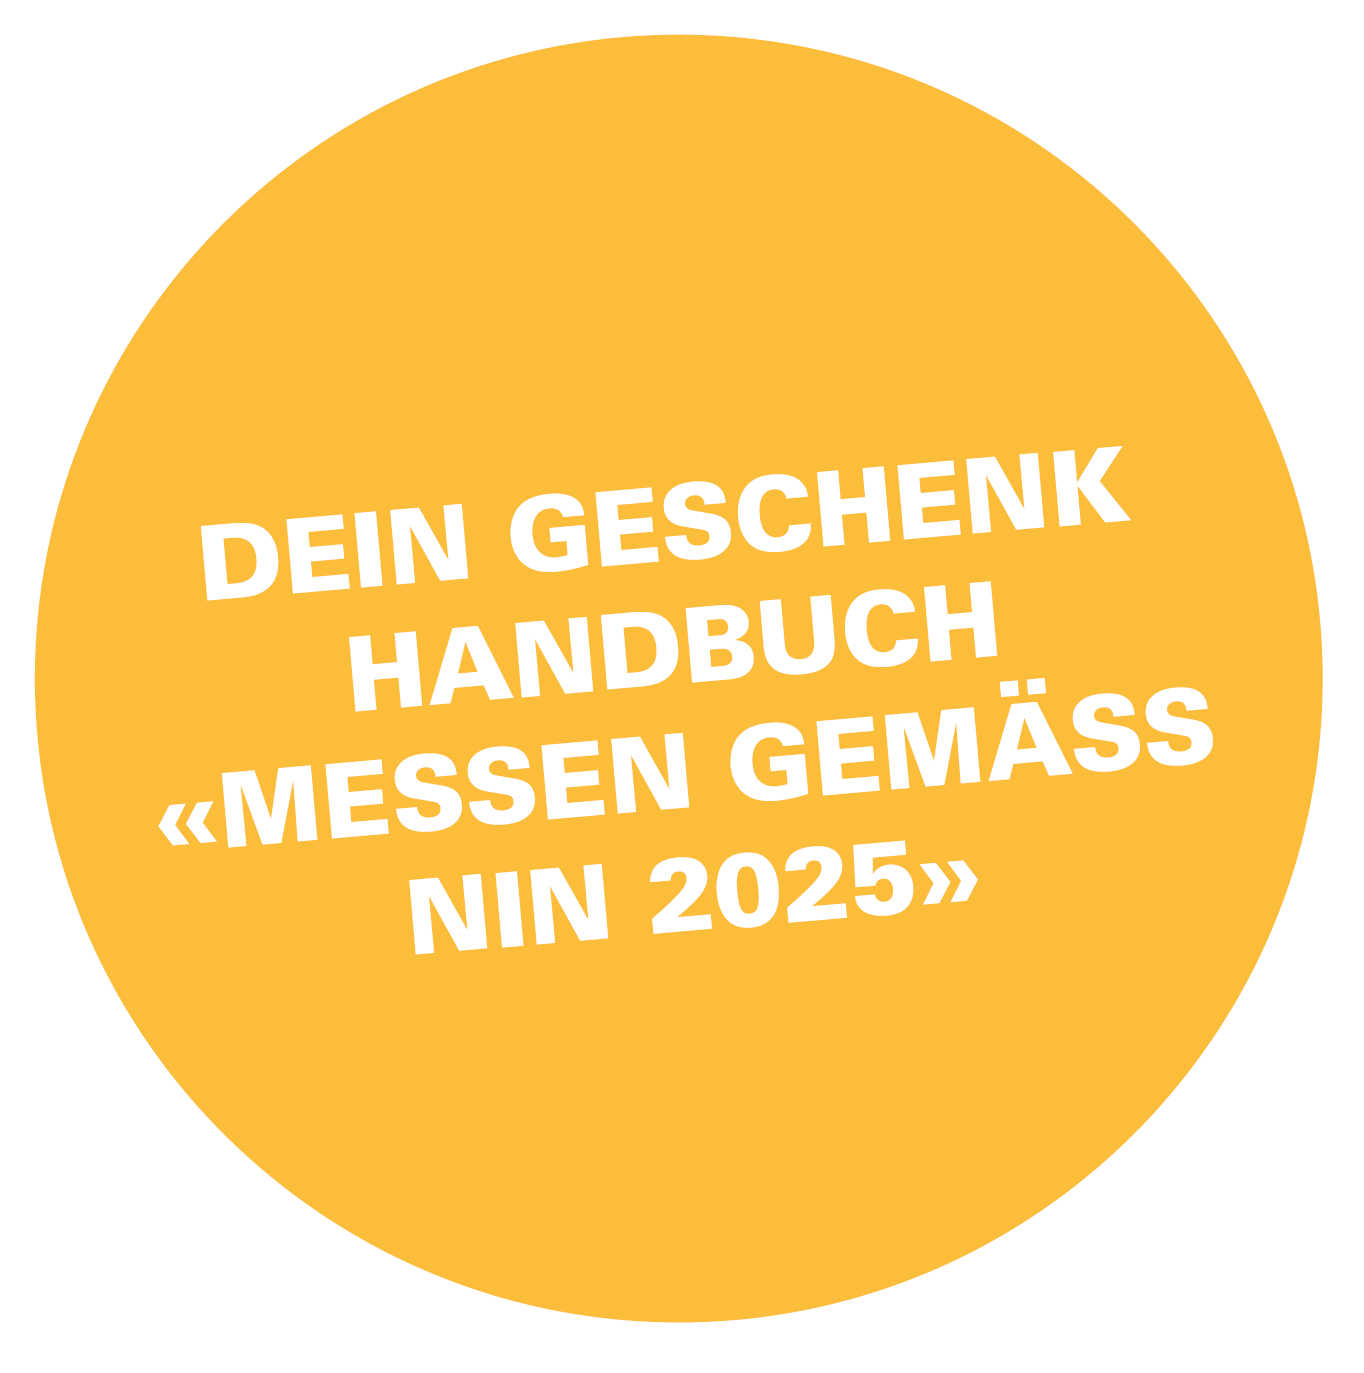 Handbuch: Messen gemäss NIN 2025